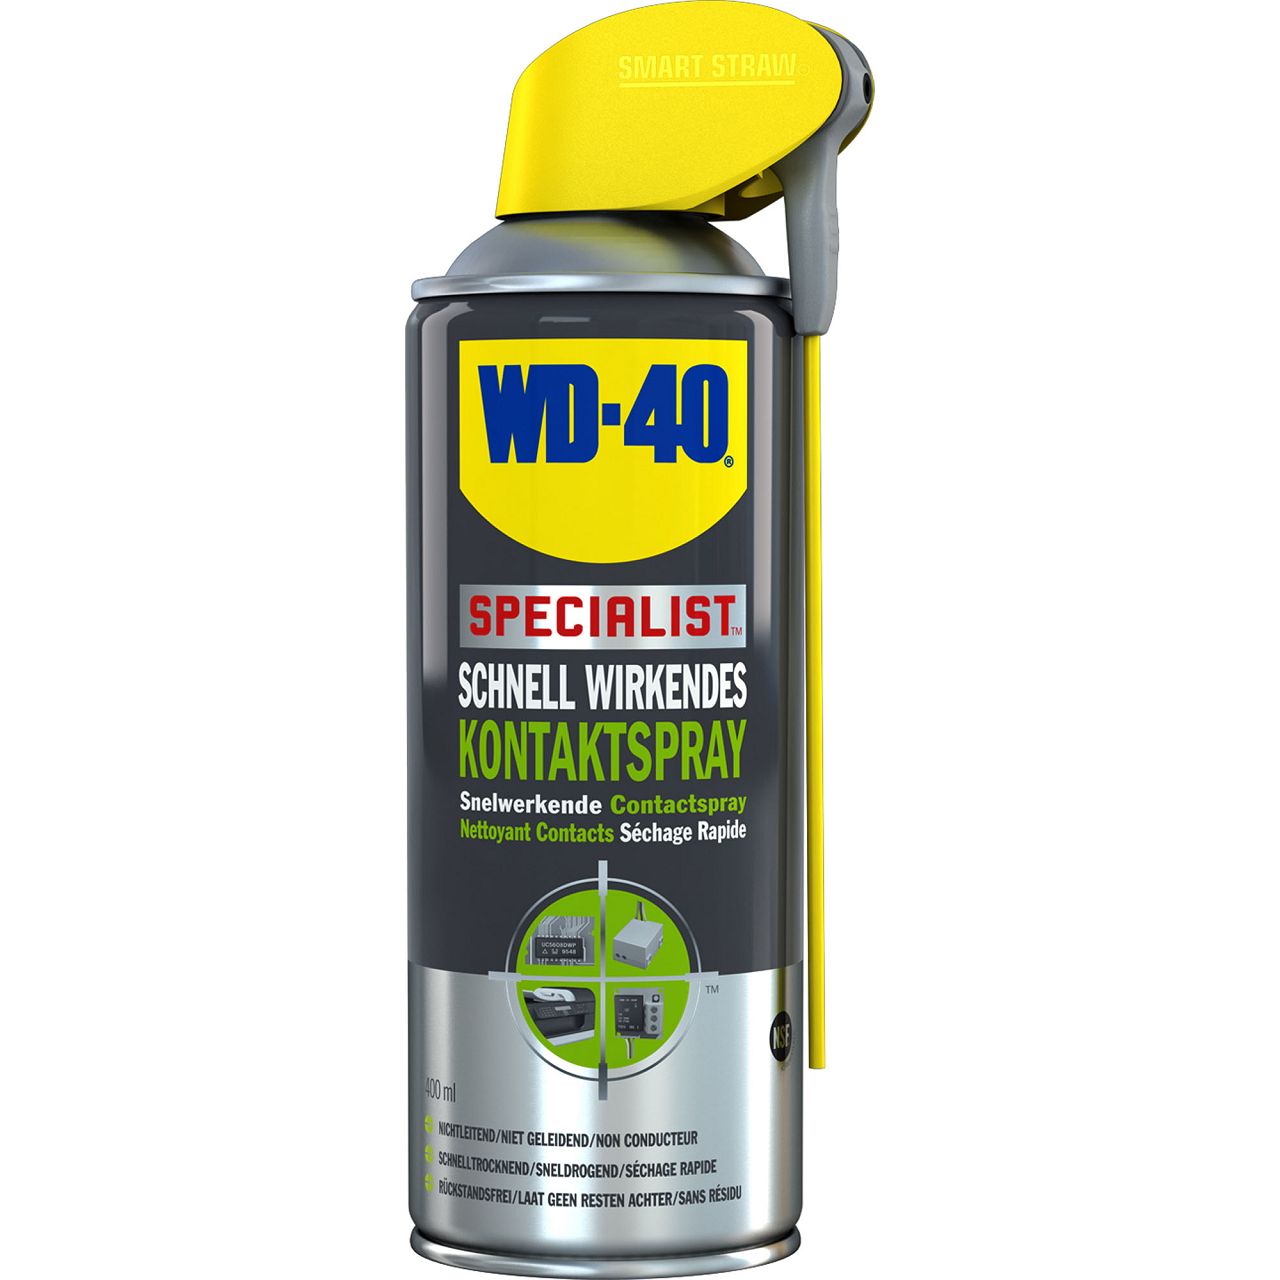 WD-40 SPECIALIST 49368 Kontaktspray Kontaktreiniger Elektronikspray 400ml